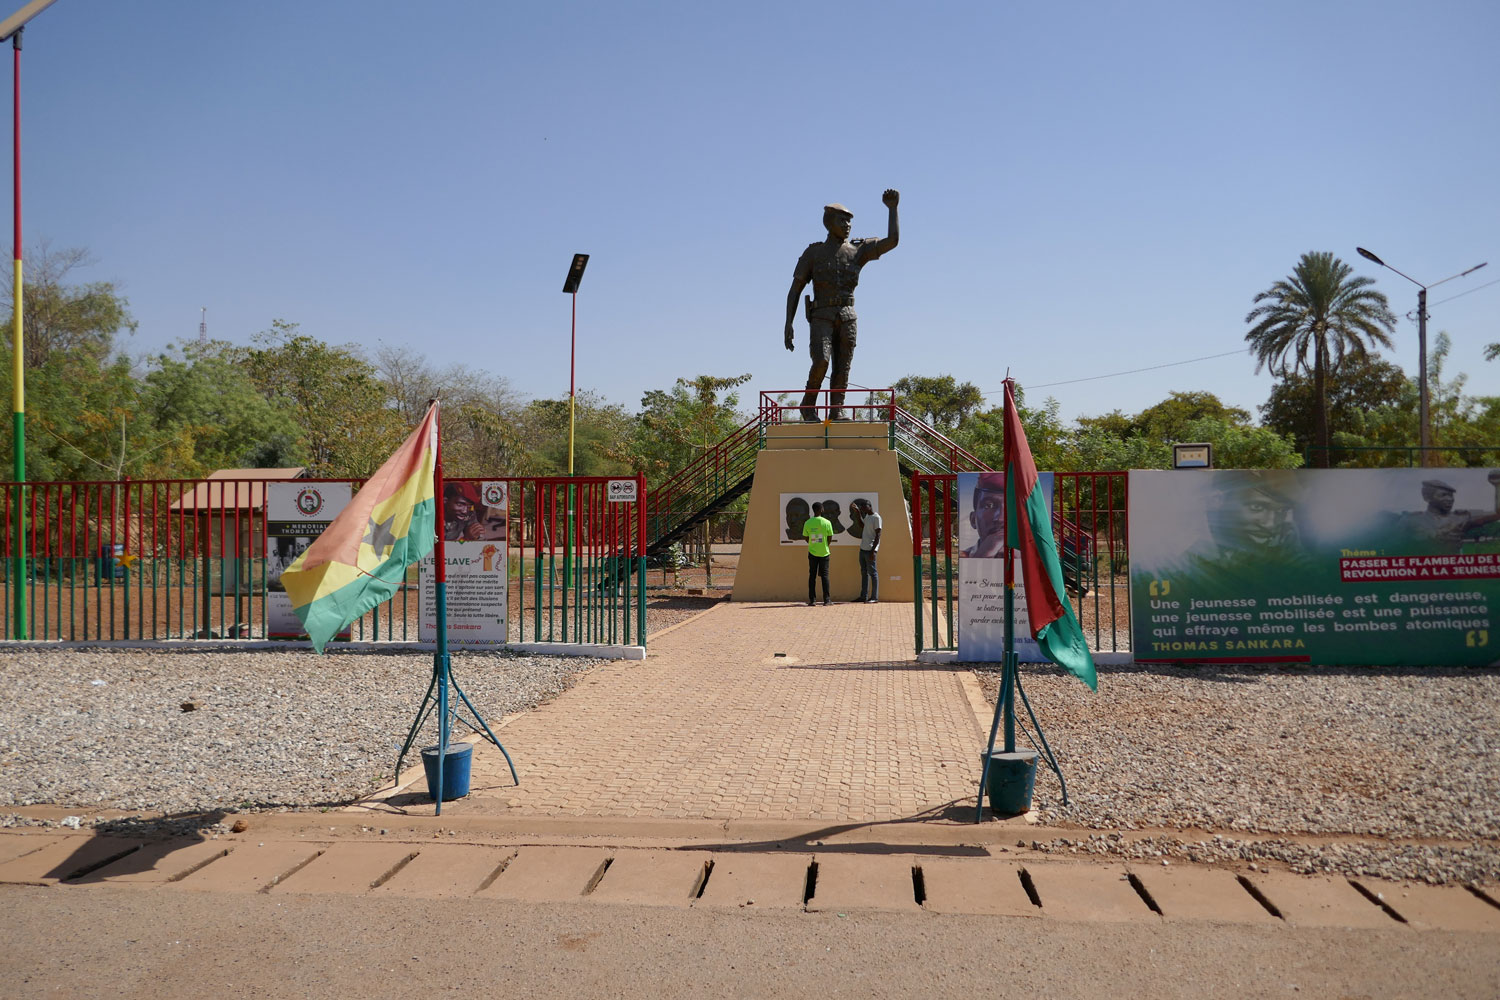 Le Mémorial de Thomas SANKARA est un des lieux symboliques de Ouagadougou, connu aussi pour la statue géante du leader burkinabé qui mesure 5 mètres de haut © Globe Reporters